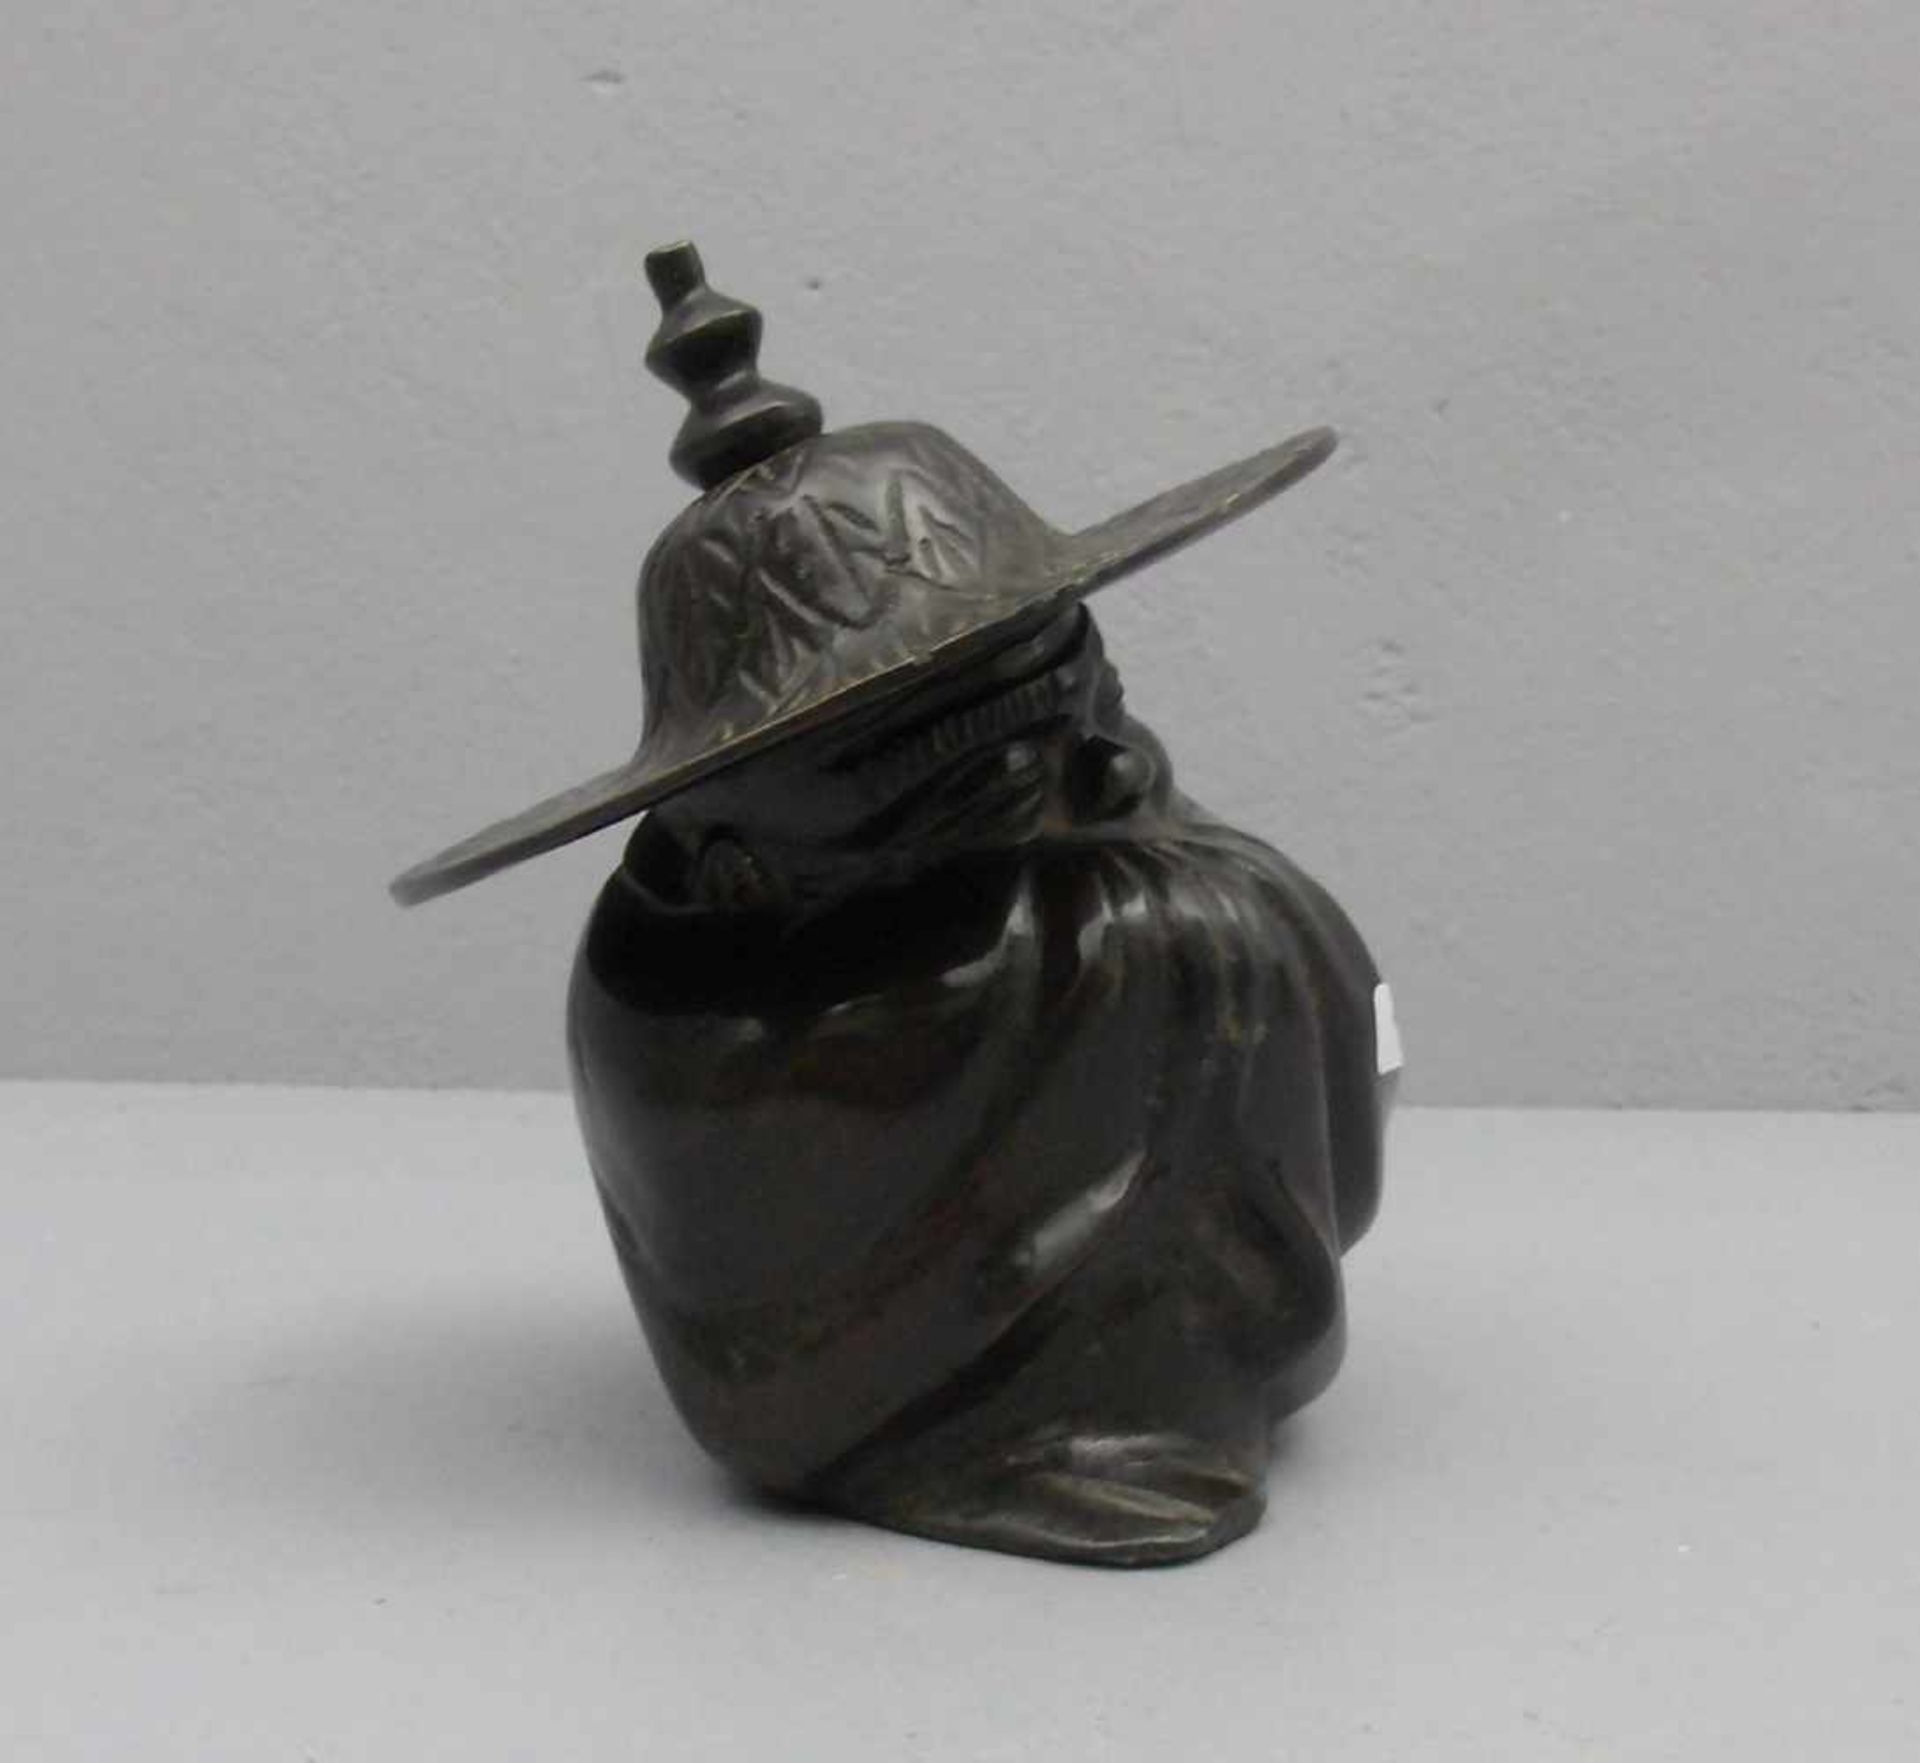 ANONYMUS (19./20. Jh.), Skulptur / sculpture: "Kauernder Chinese", Bronze, dunkelbraun patiniert. - Bild 2 aus 3